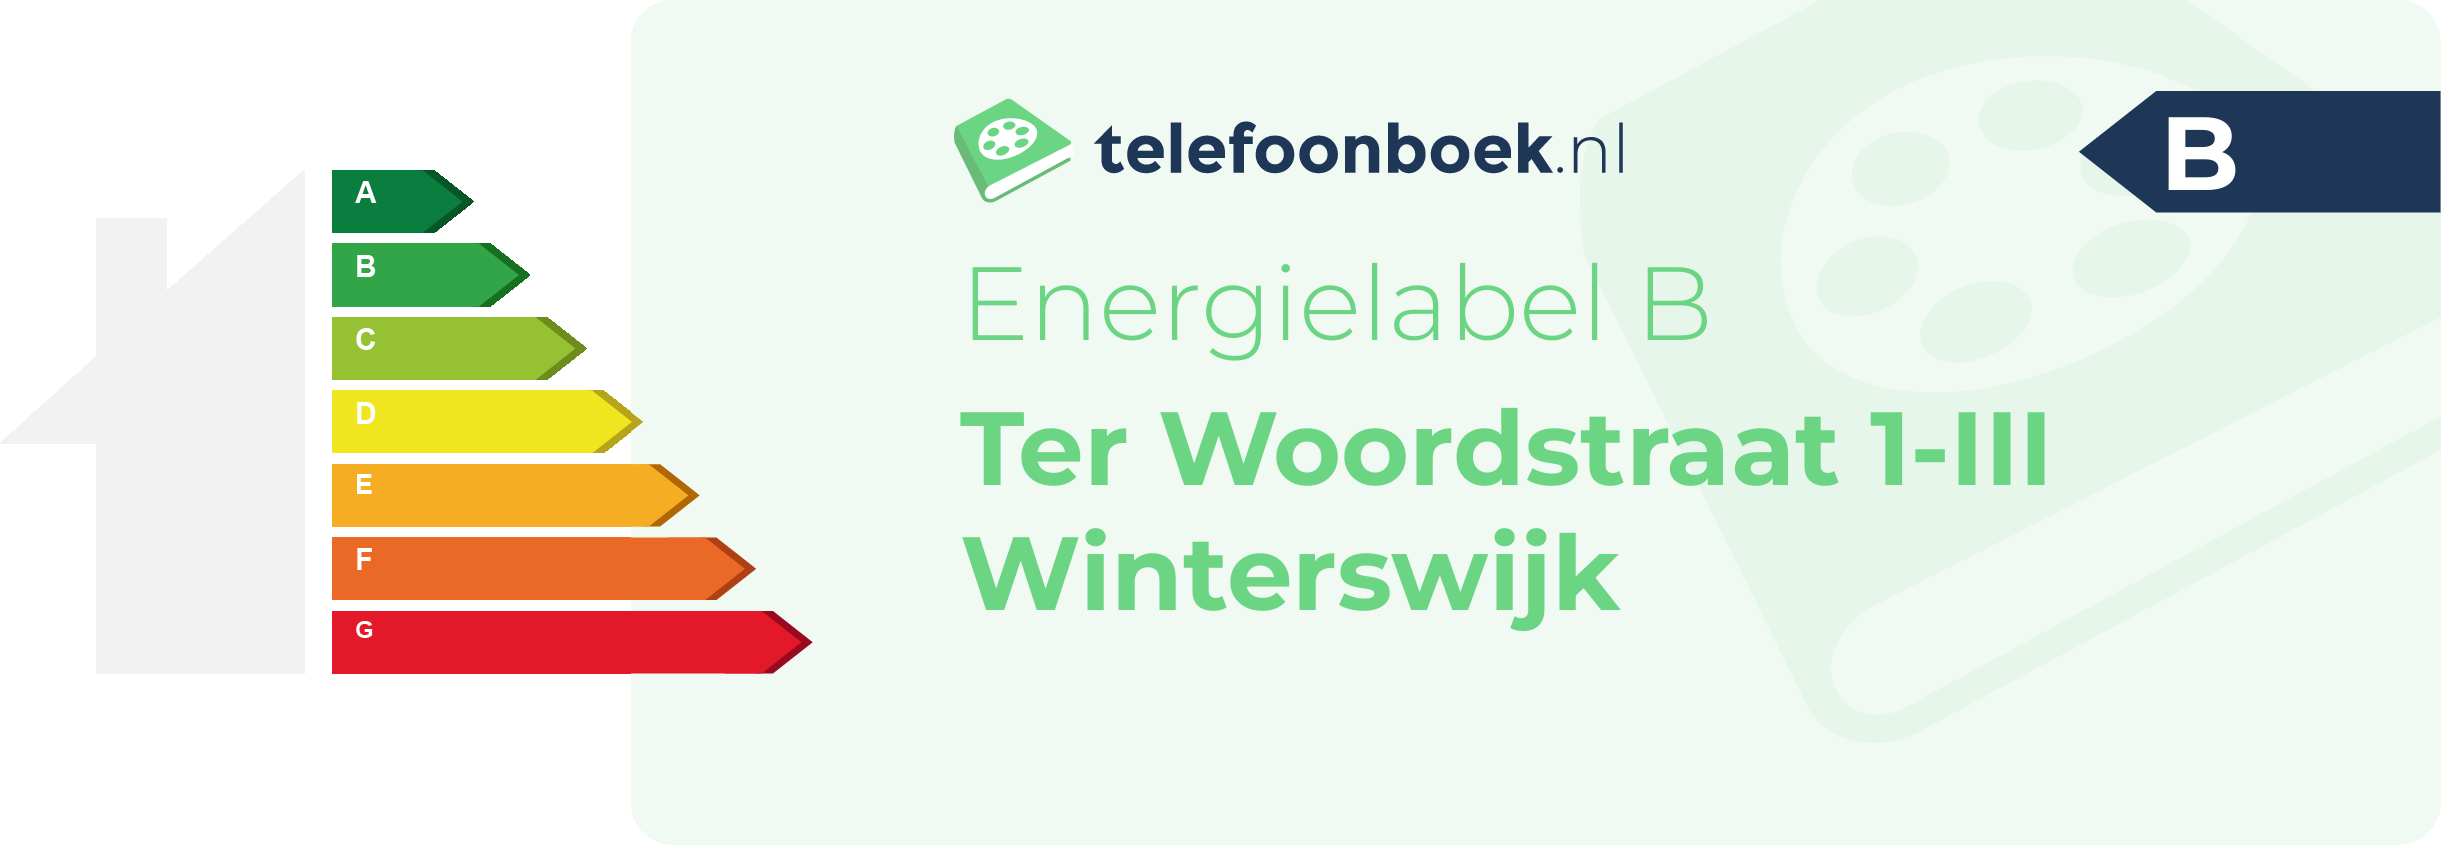 Energielabel Ter Woordstraat 1-III Winterswijk